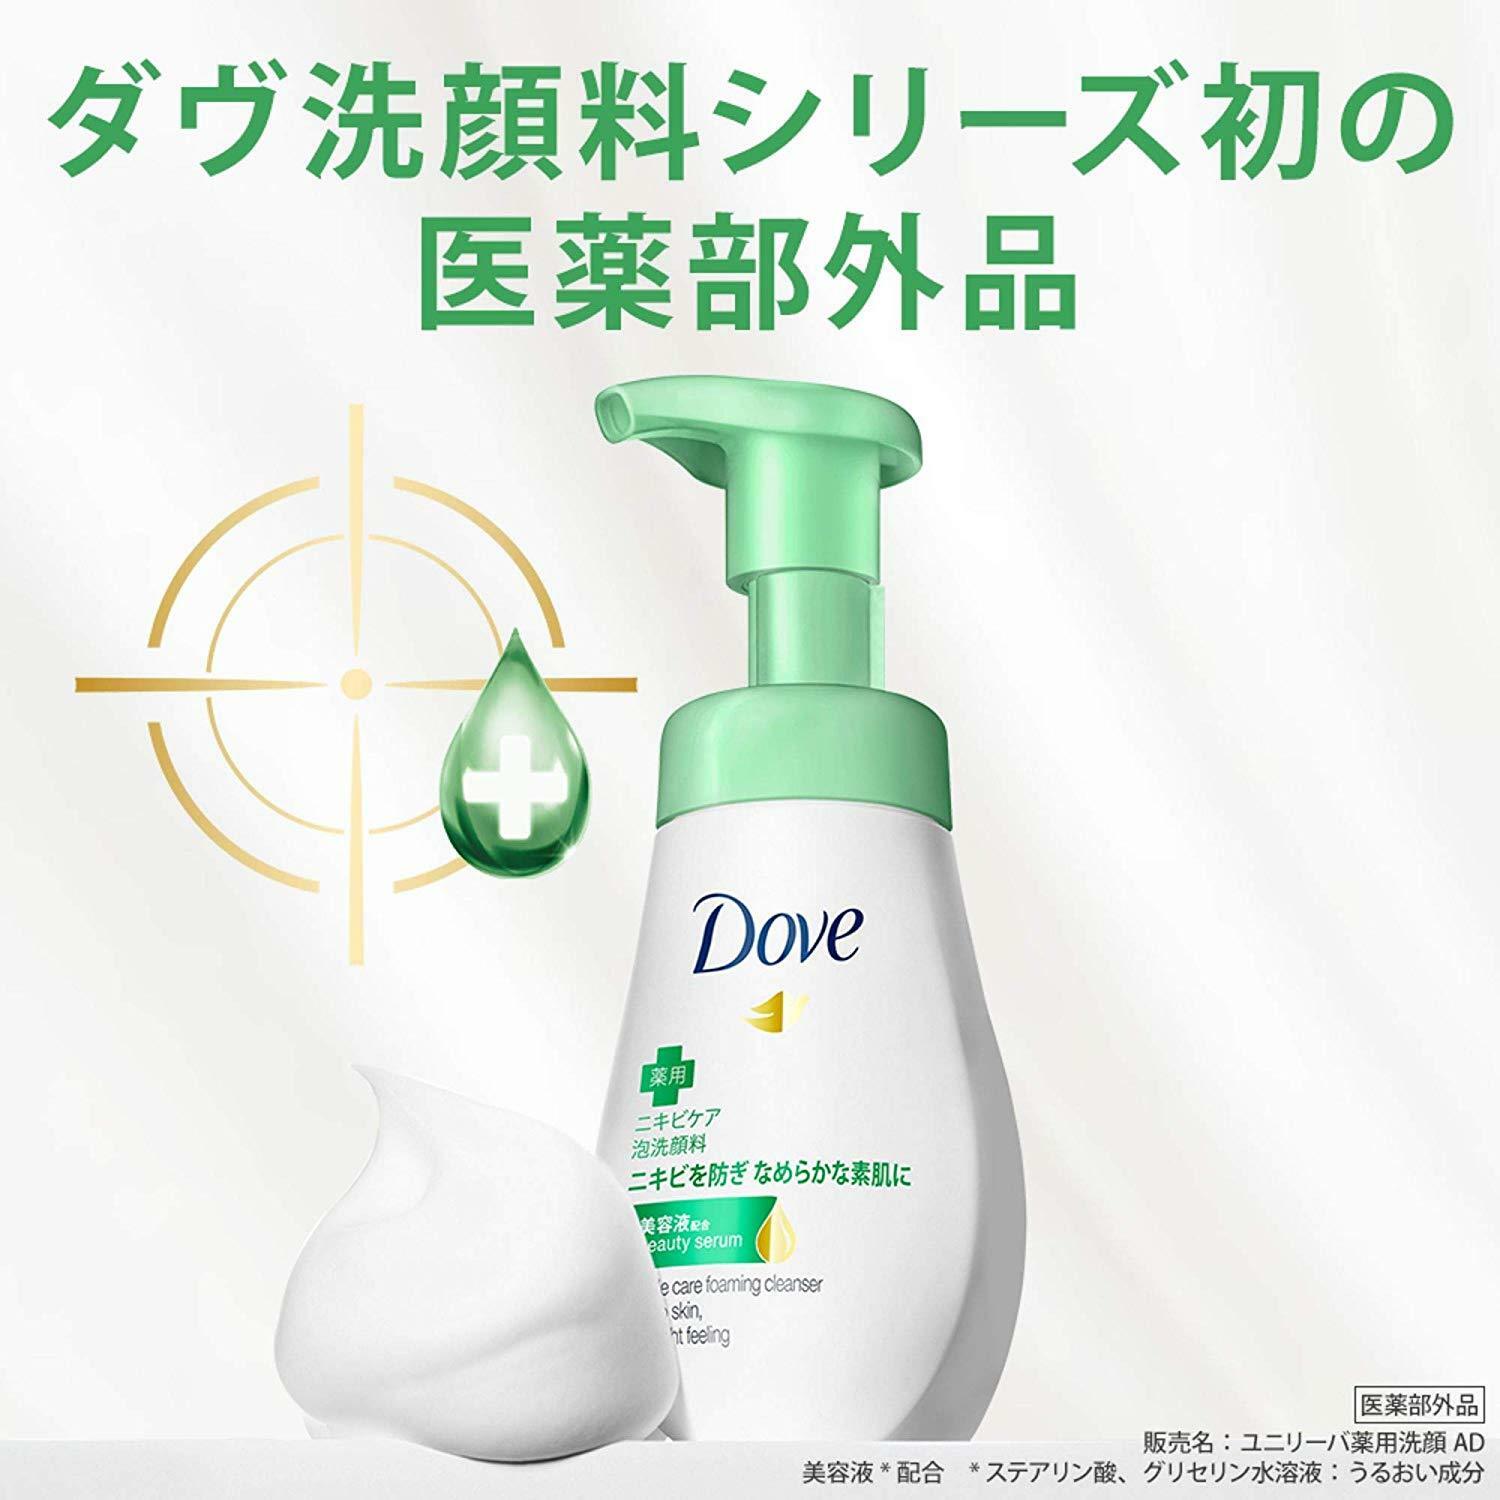 sữa rửa mặt dove